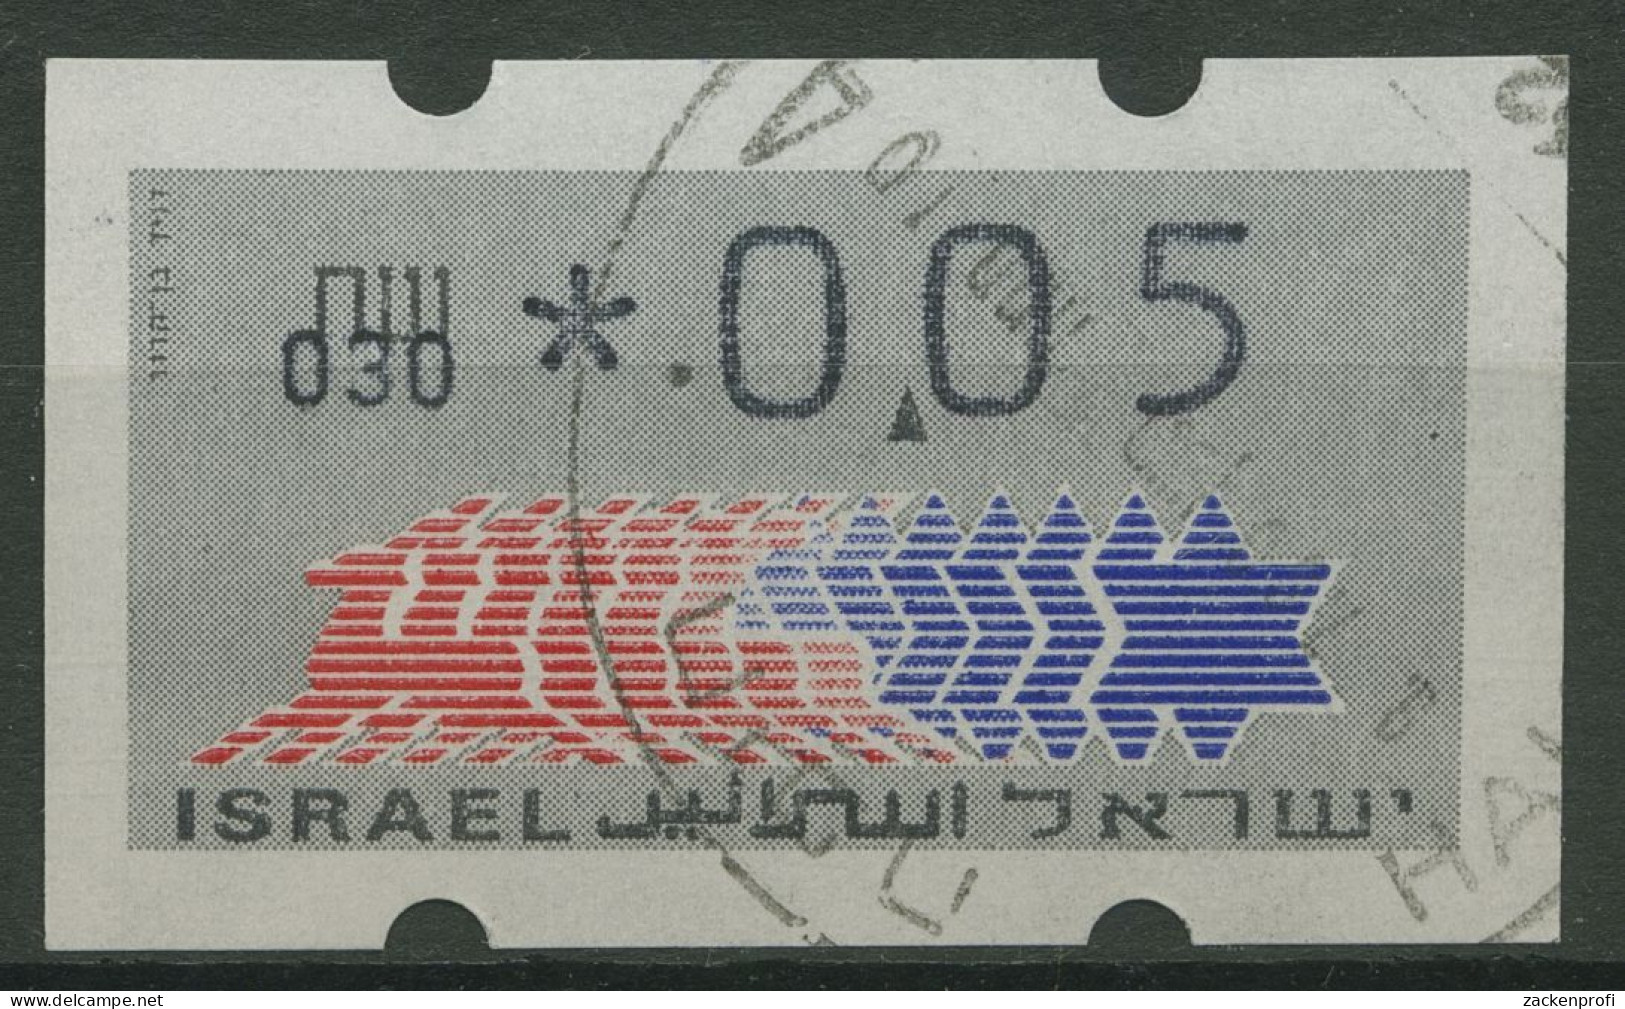 Israel ATM 1990 Hirsch Automat 030 Einzelwert ATM 3.1.30 Gestempelt - Franking Labels